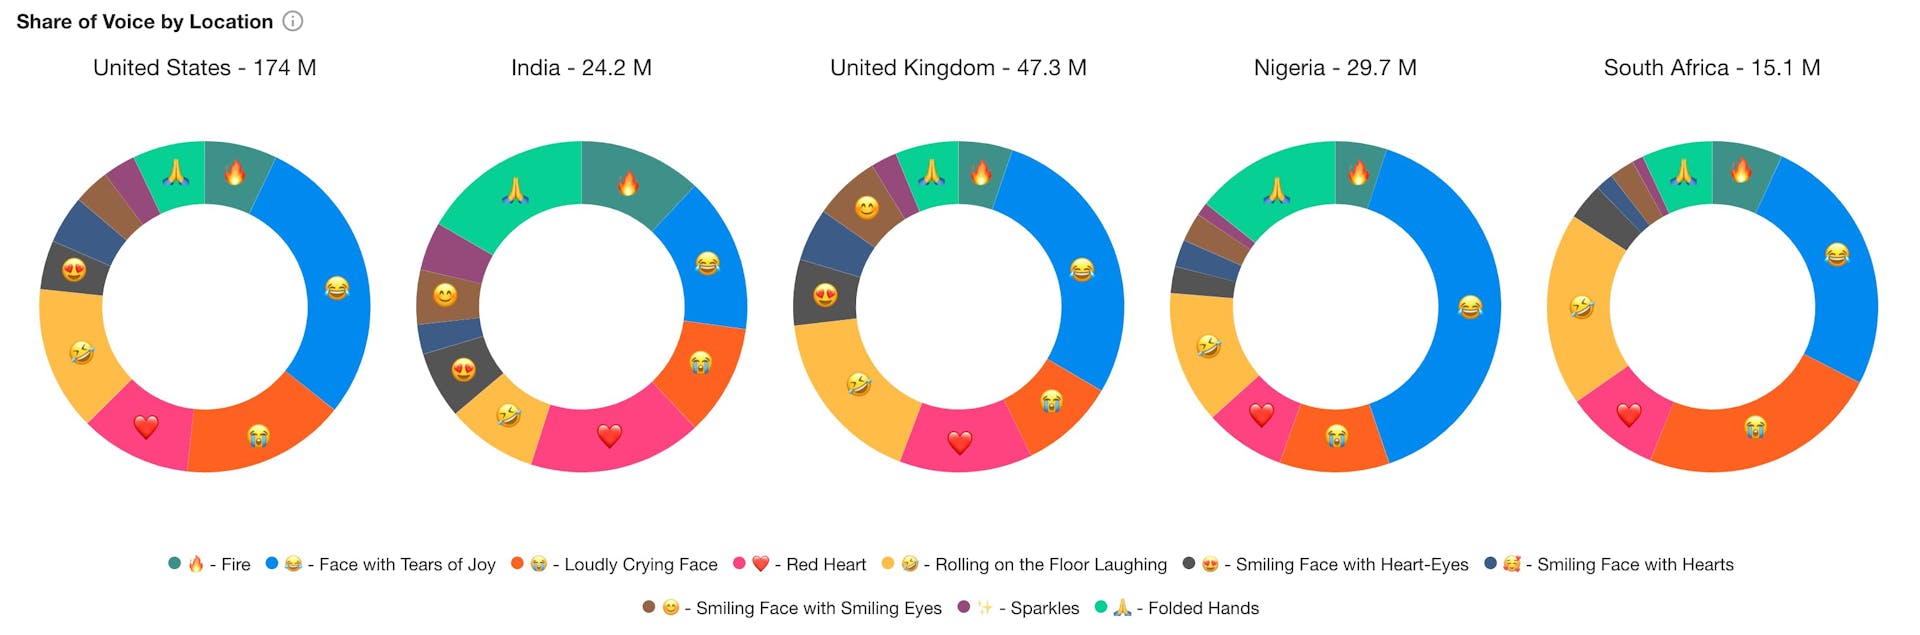 Les graphiques en anneau présentent la répartition des émoticônes par pays, incluant les Etats-Unis, l'Inde, le Royaume-Uni, le Nigeria et l'Afrique du Sud.